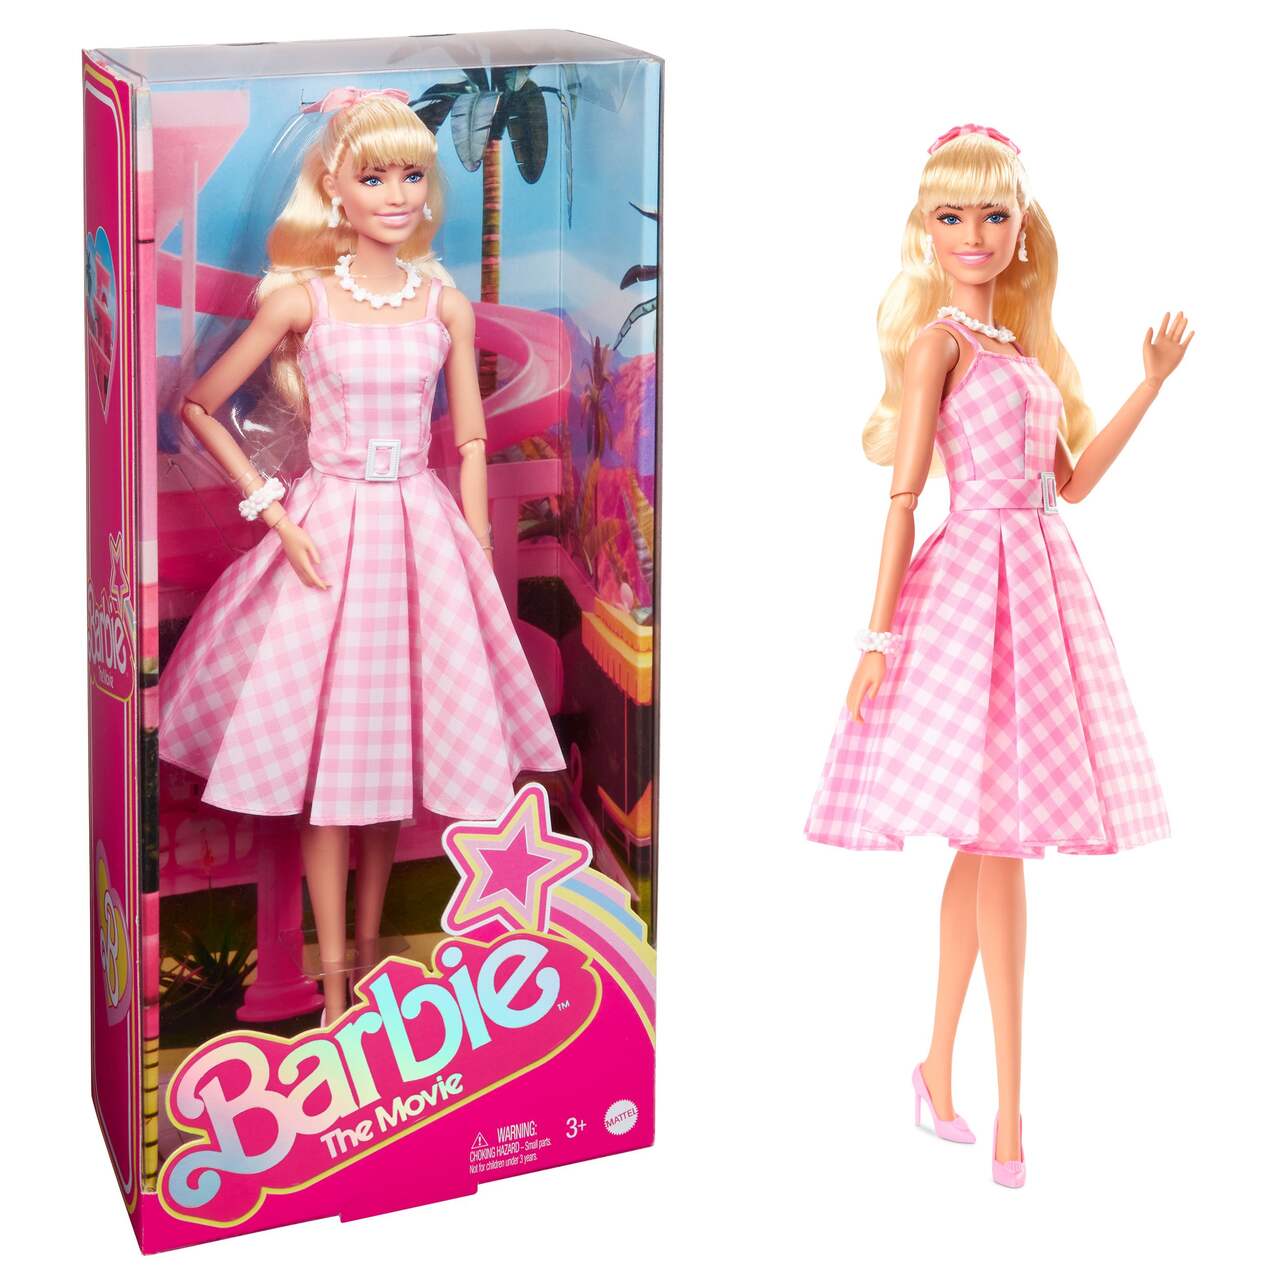 Voiture télécommandée Barbie ne fonctionne pas - Barbie